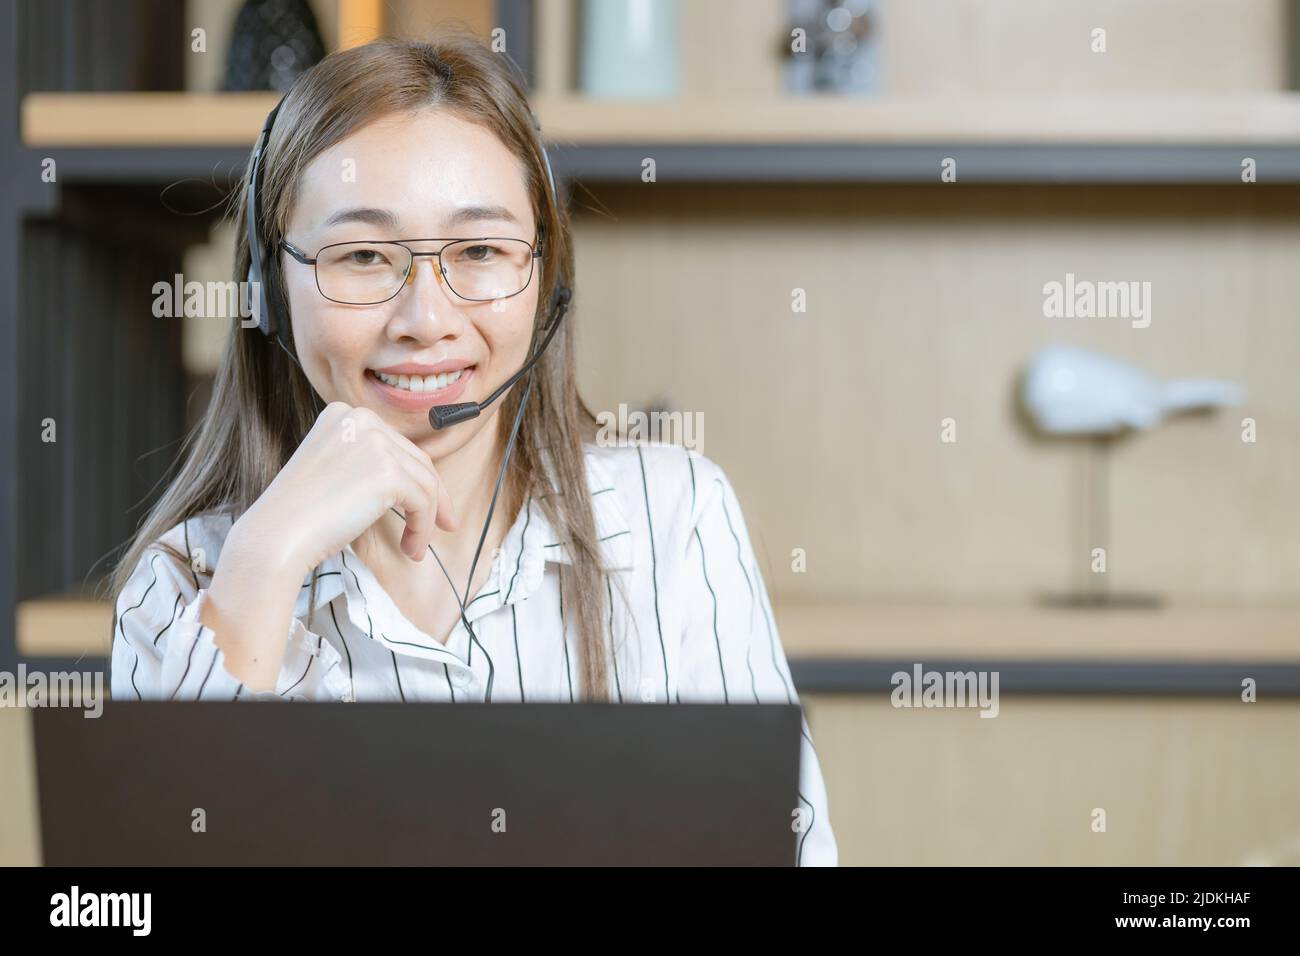 donna che lavora per lavoro lavora al call center personale del team di assistenza clienti a chiamata con cuffie happy smile portrait Foto Stock